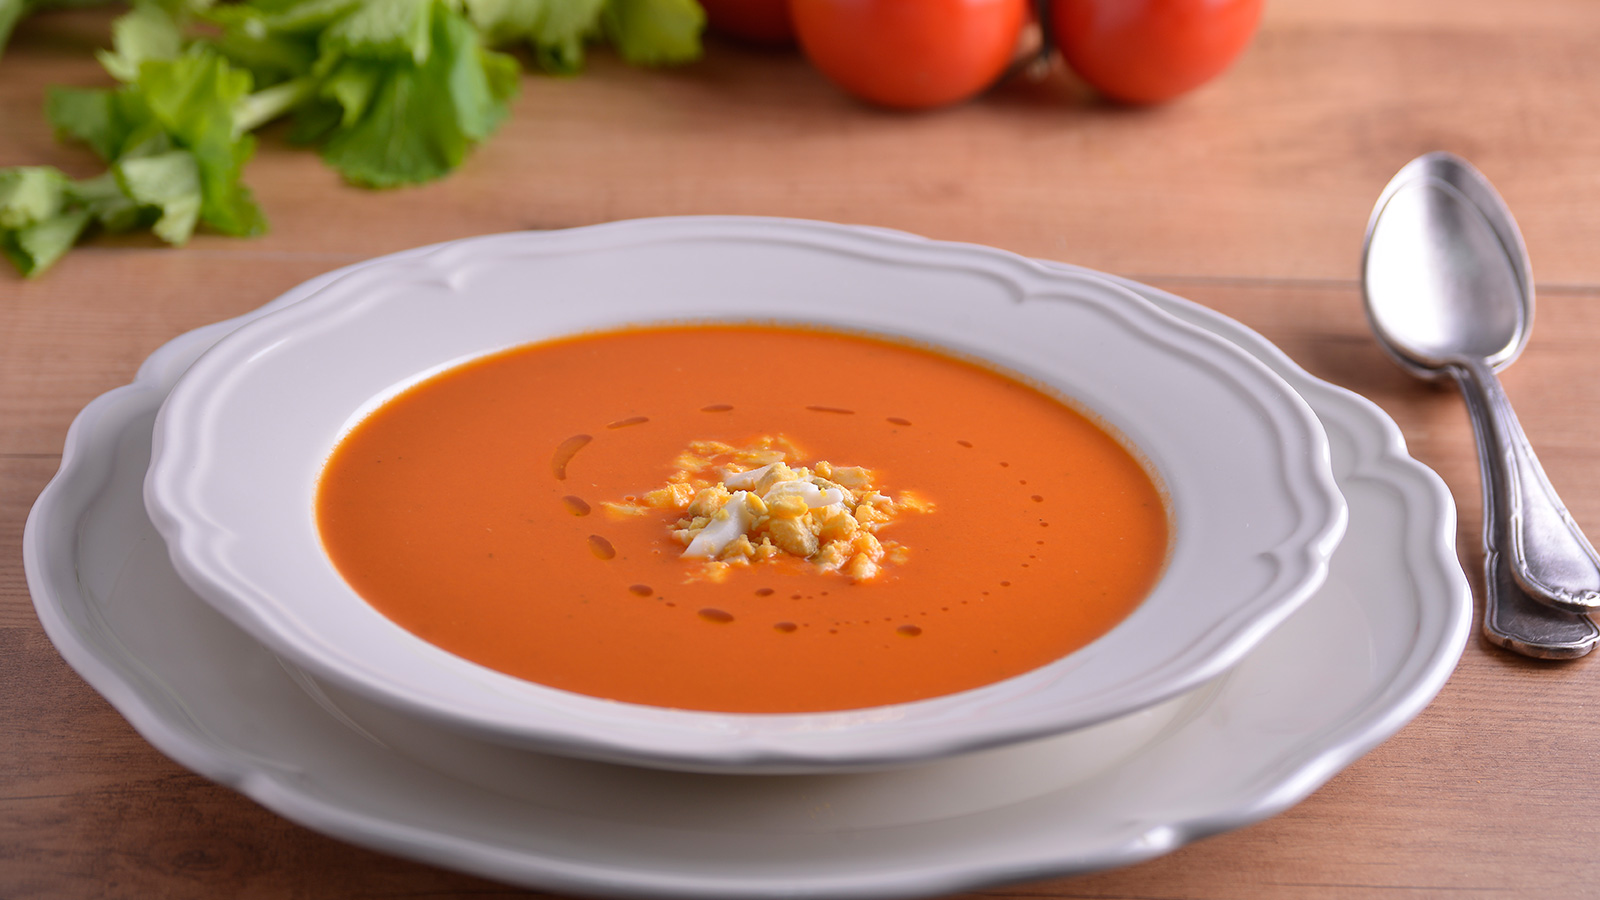 Como hacer sopa de tomate